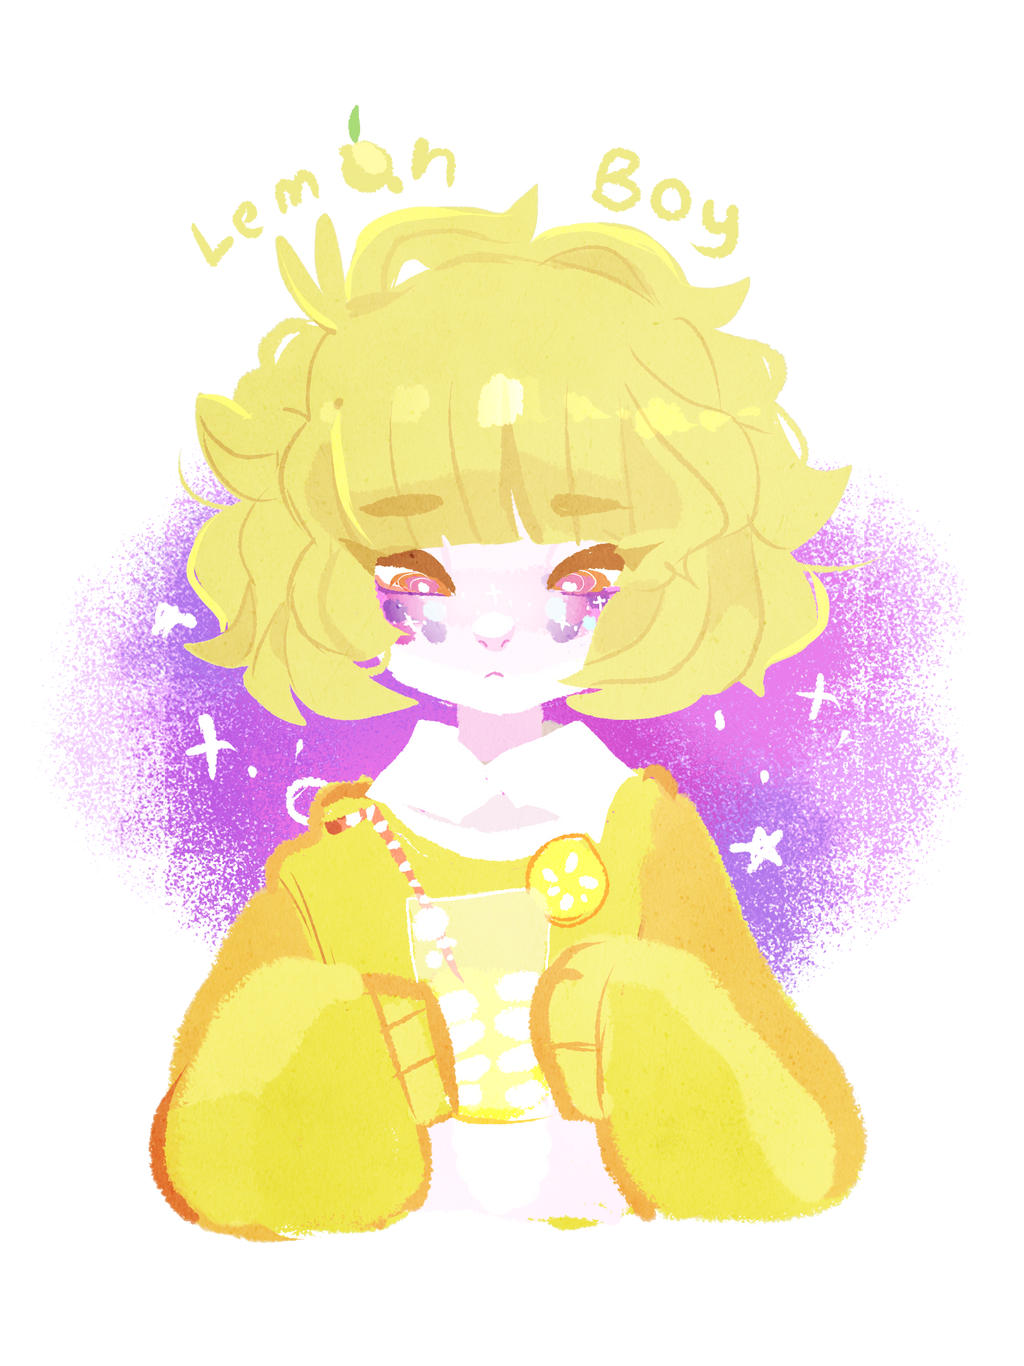 Lemon boy арт. Lemon boy album. Lemon boy Map fanart. Lemon boy